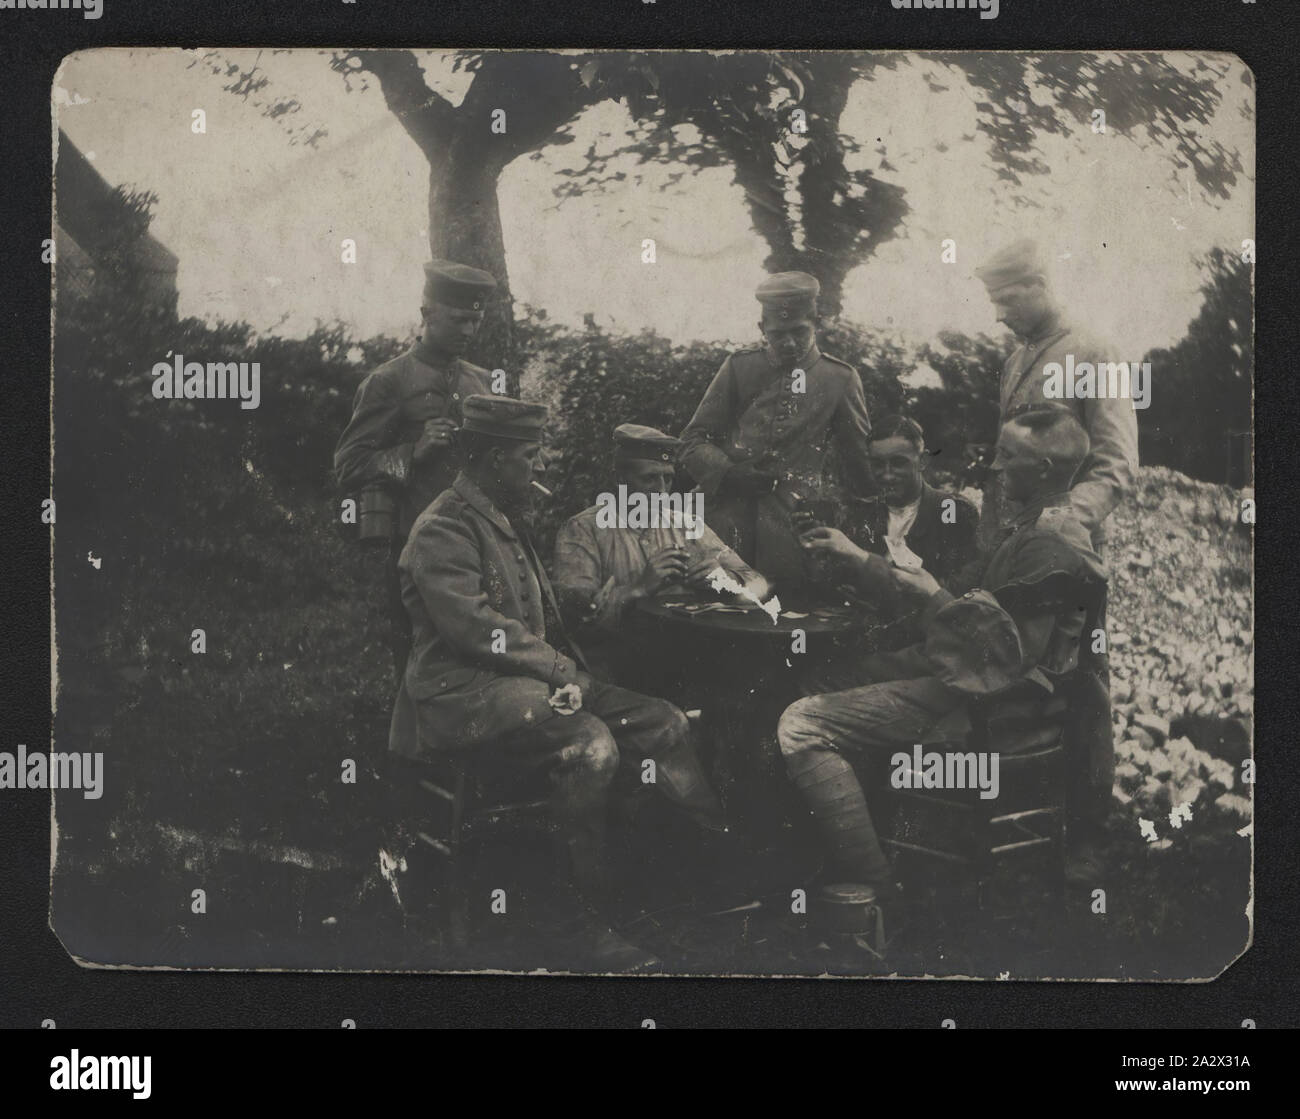 Photographie - Soldats allemands des cartes à jouer, la Première Guerre mondiale, 1914-1918, photographie en noir et blanc avec les soldats allemands de cartes à jouer - probablement des soldats du 3e Régiment d'infanterie. La prise de vue date de la Première Guerre mondiale. sa provenance est inconnue Banque D'Images